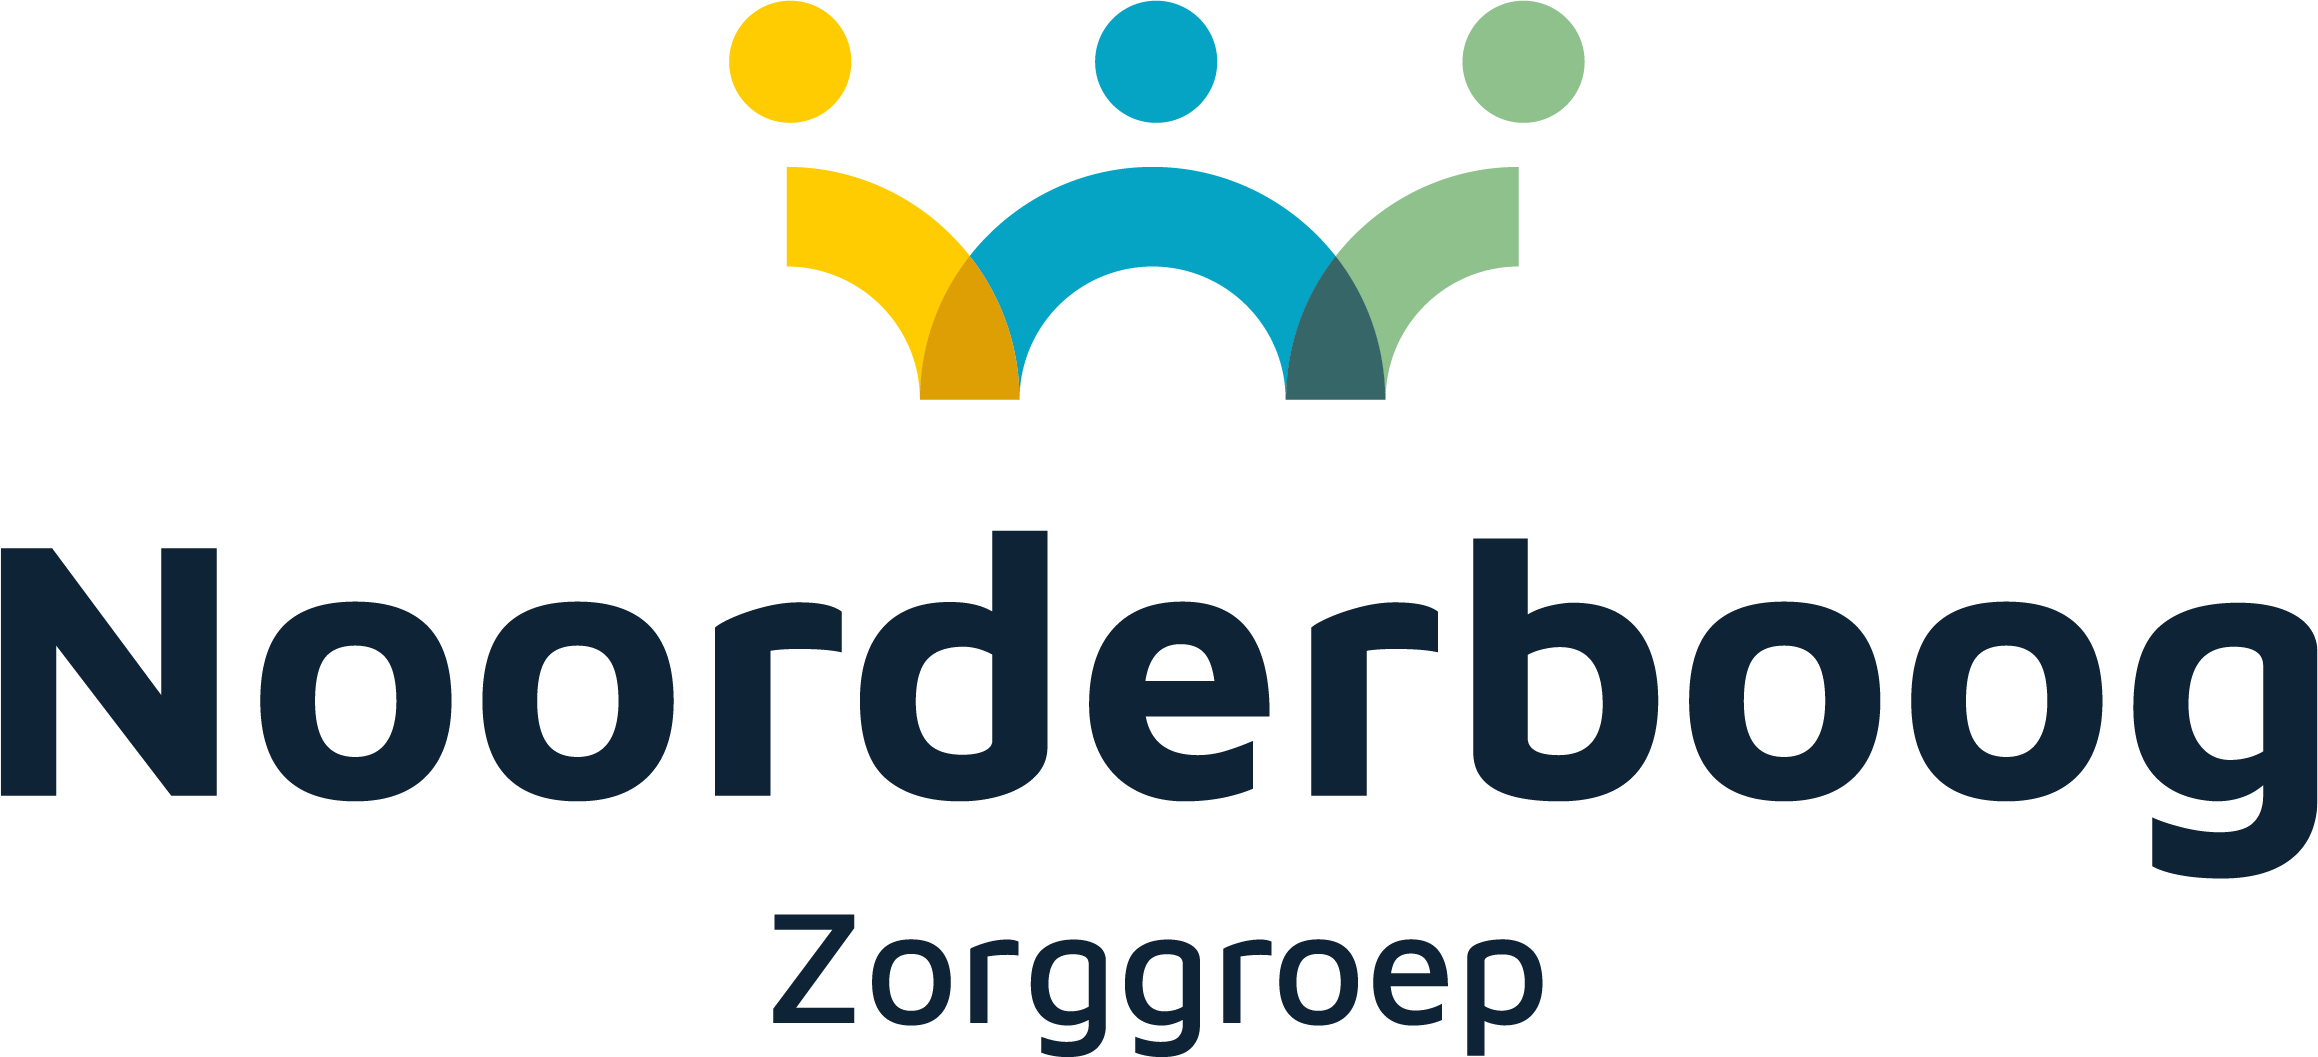 Noorderboog Zorggroep